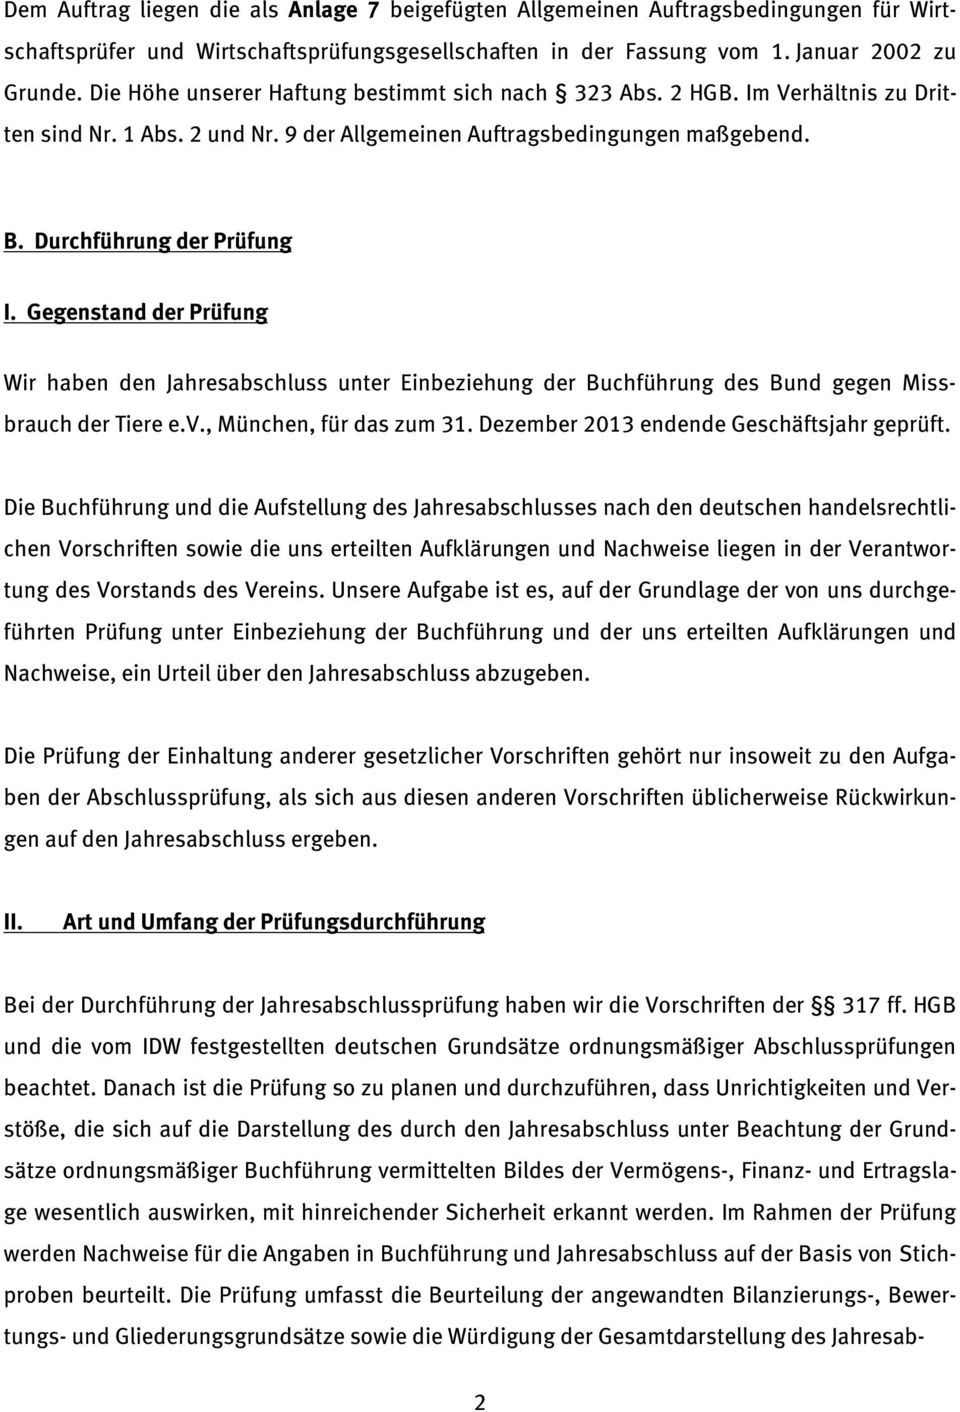 Gegenstand der Prüfung Wir haben den Jahresabschluss unter Einbeziehung der Buchführung des Bund gegen Missbrauch der Tiere e.v., München, für das zum 31. Dezember 2013 endende Geschäftsjahr geprüft.